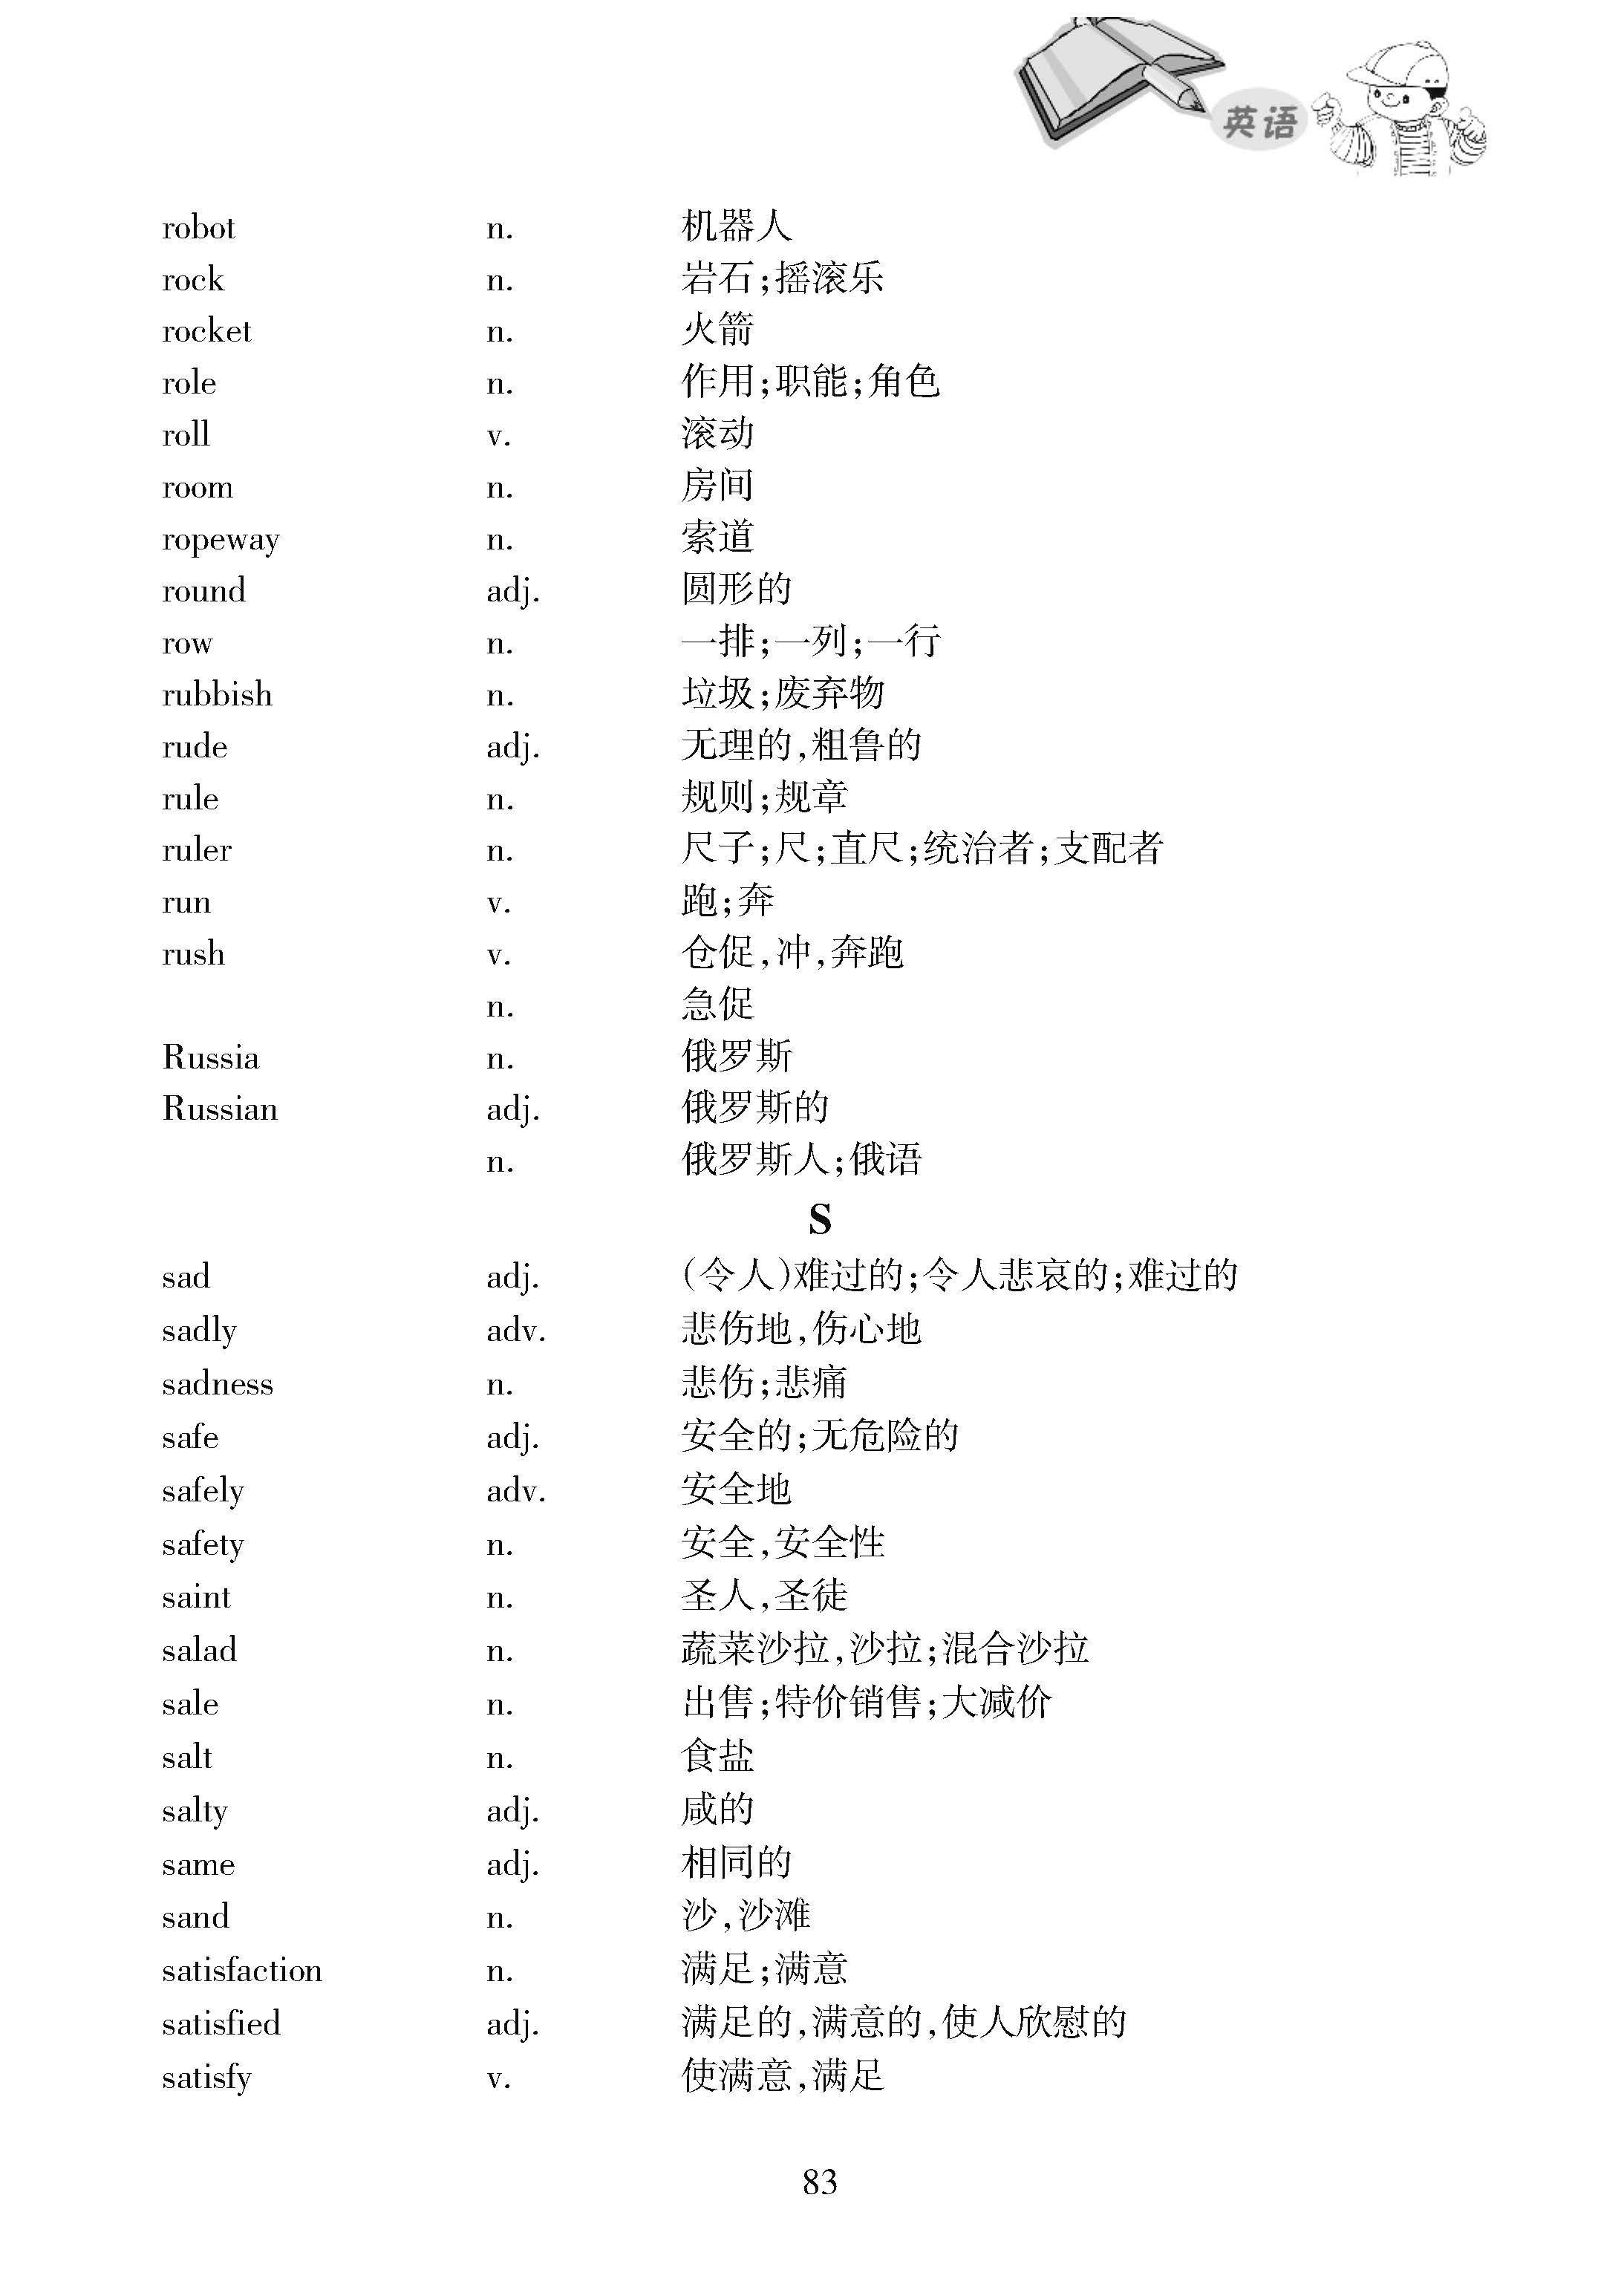 2019黑龙江哈尔滨中考英语考试说明：附录 词汇表2064个